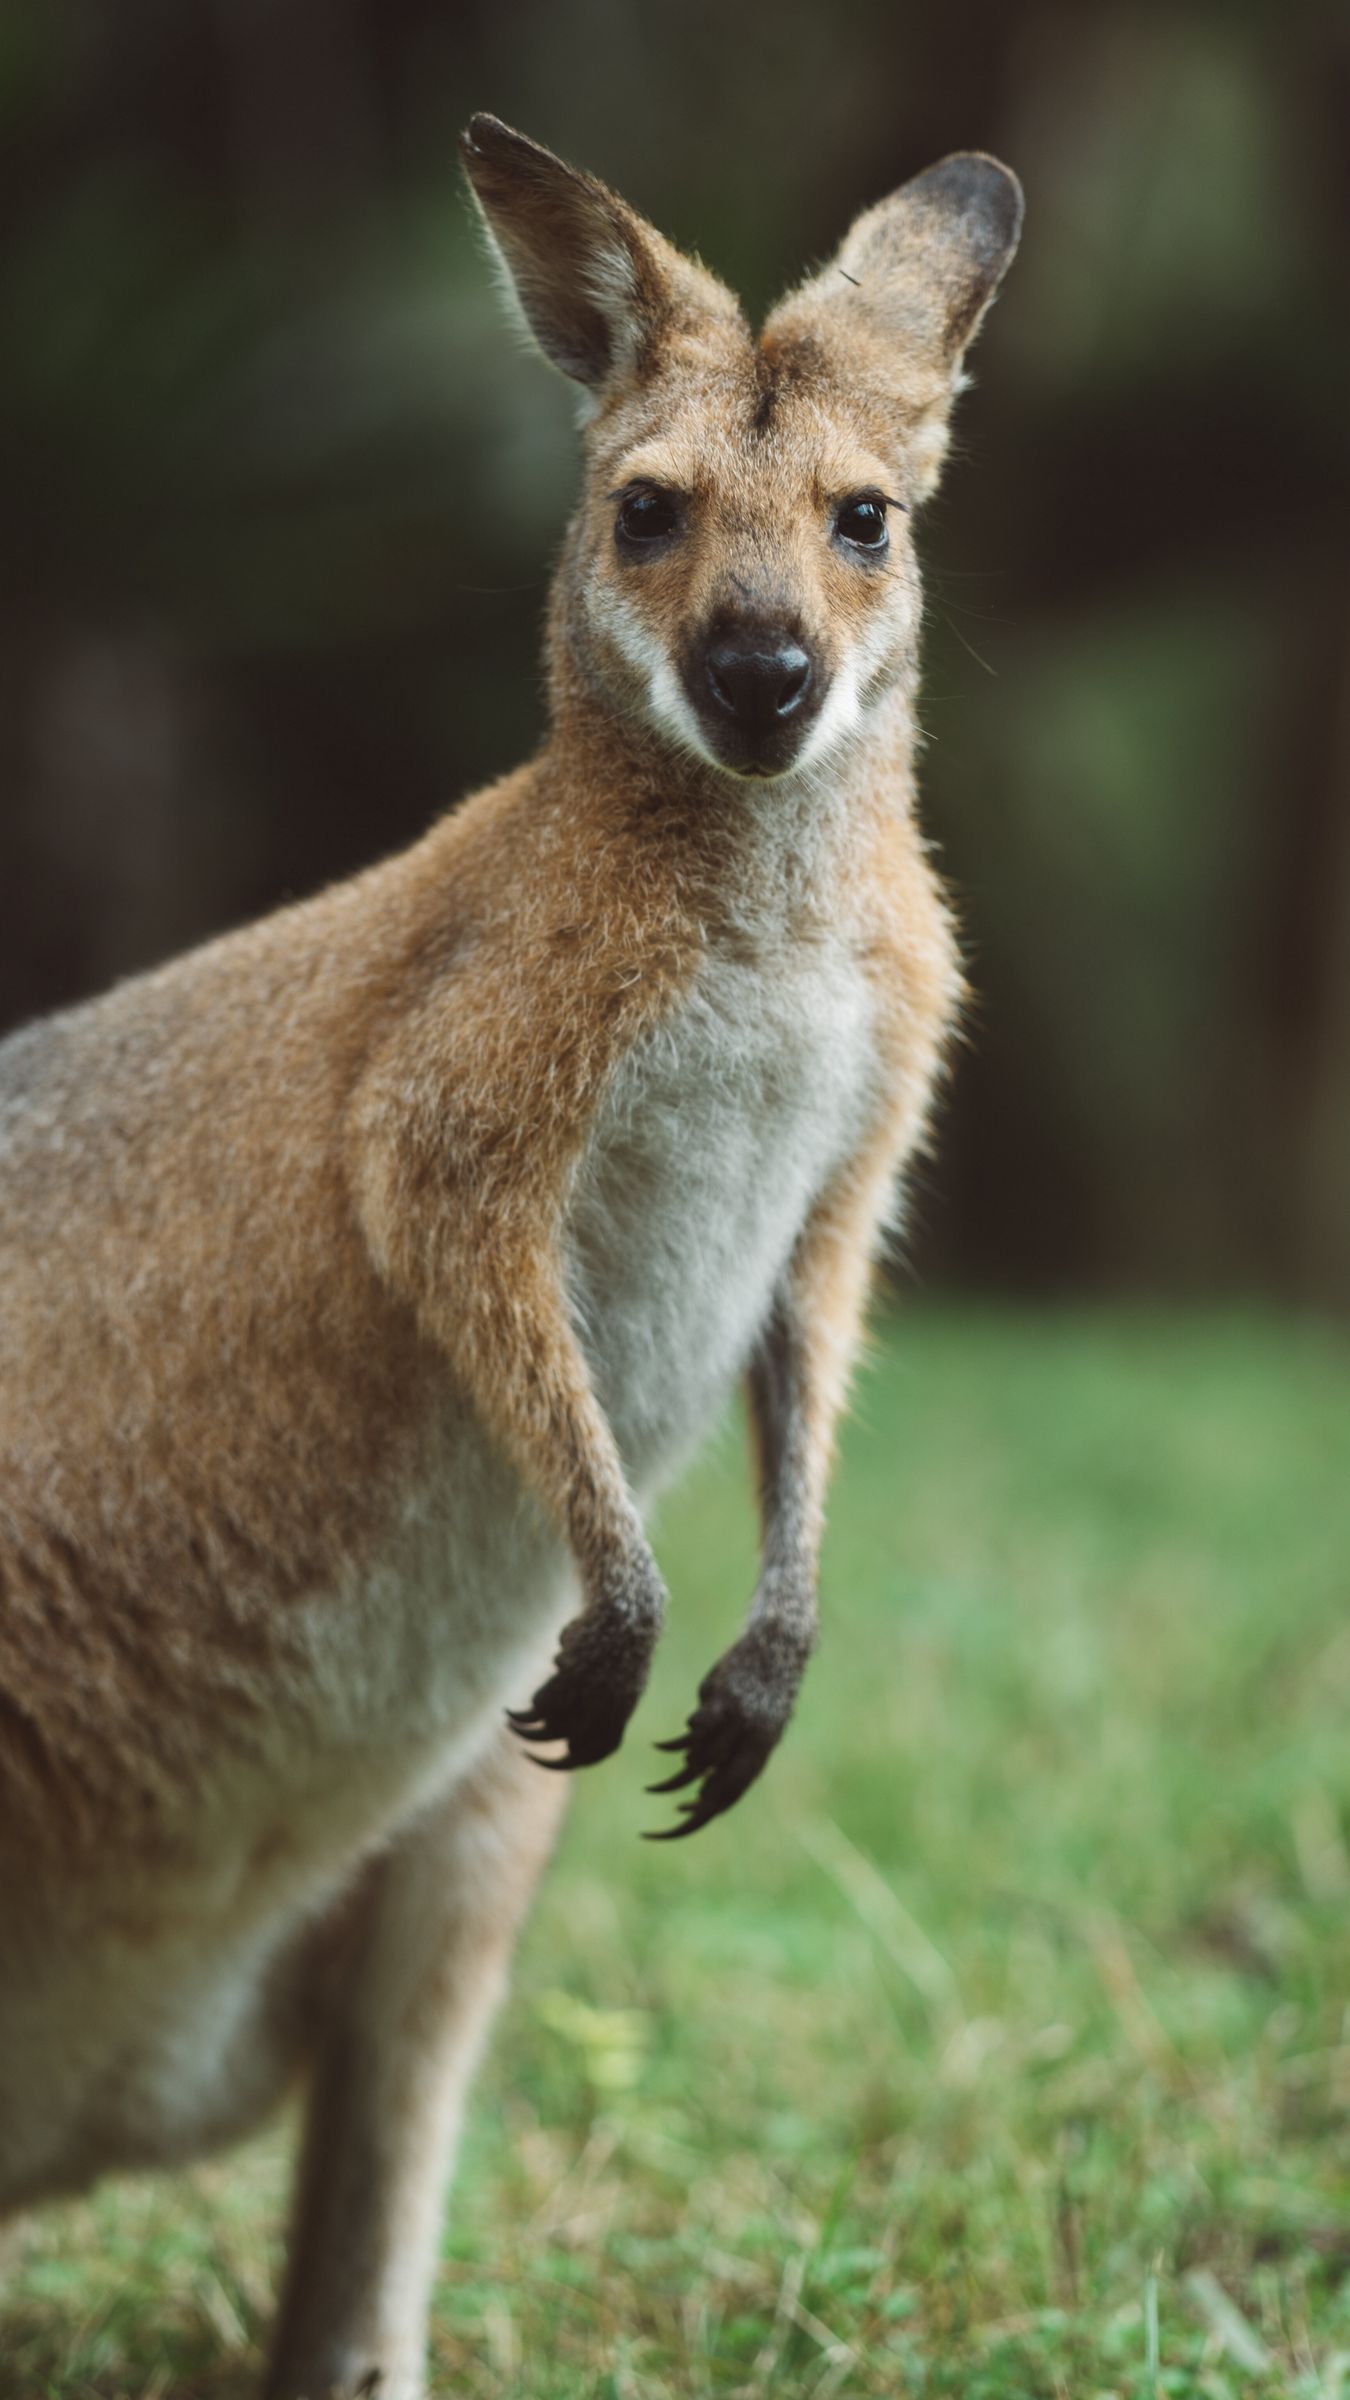 Kangaroo Photos Download The BEST Free Kangaroo Stock Photos  HD Images